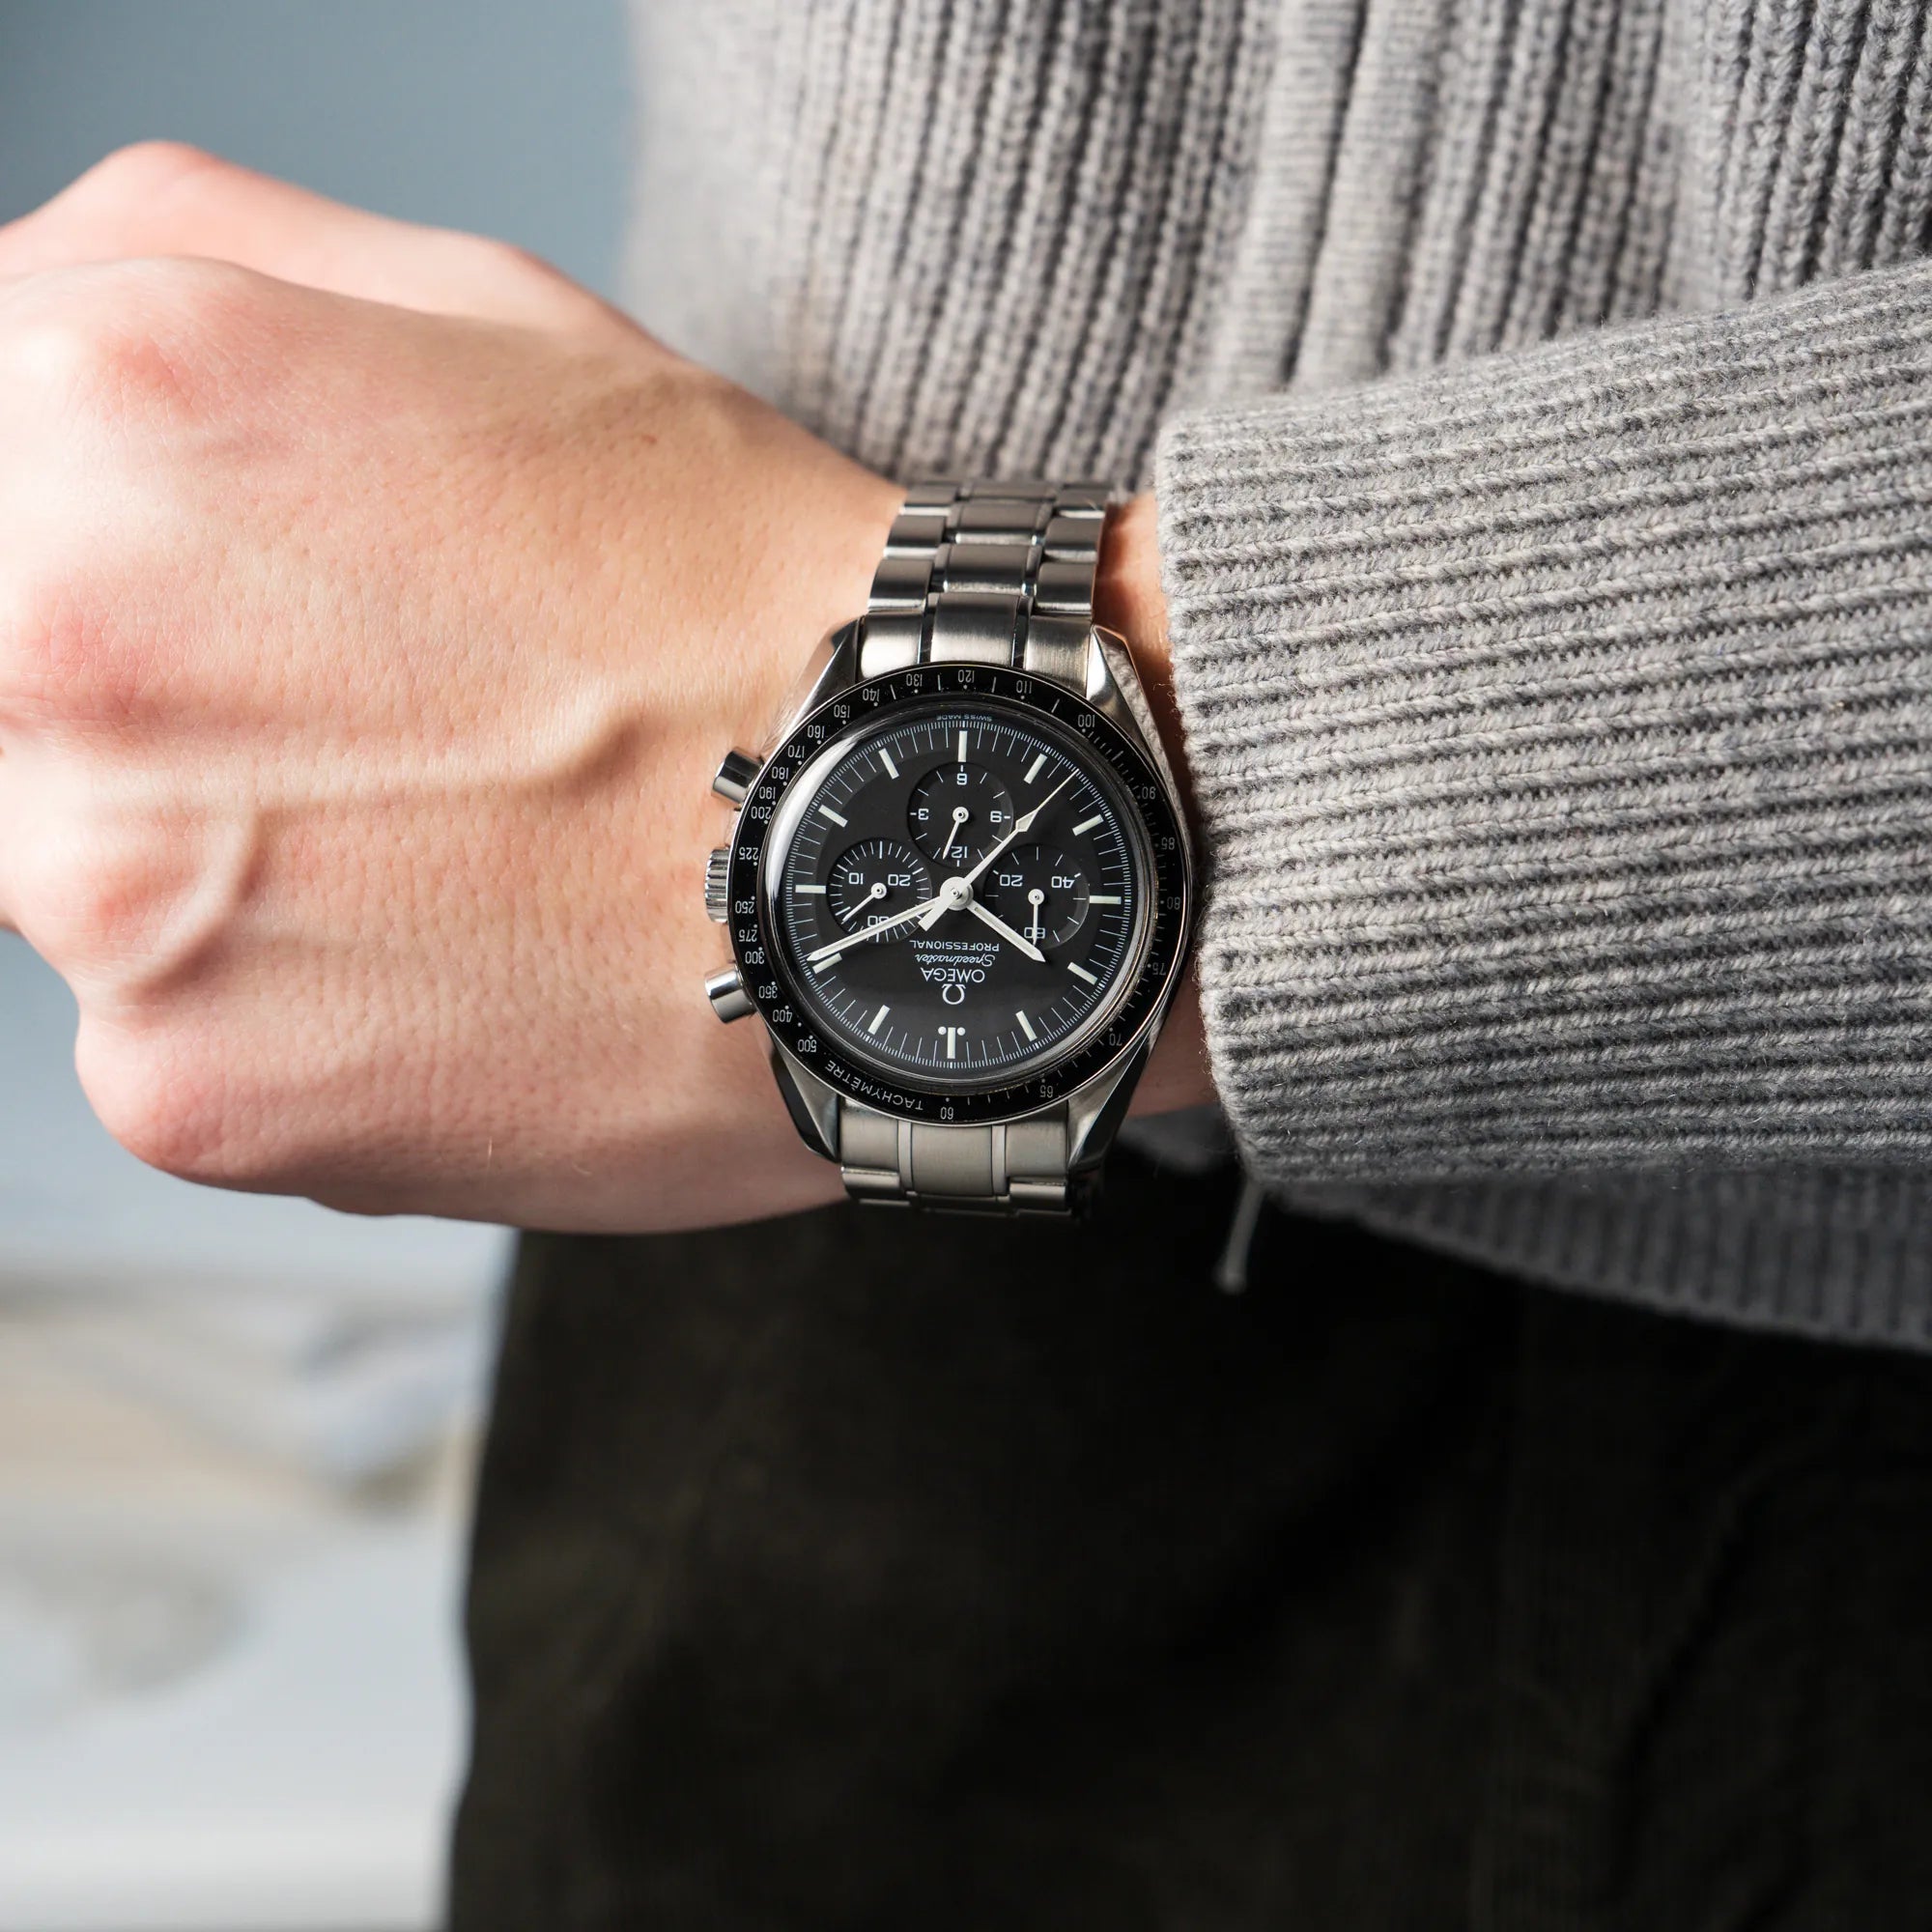 Mann trägt die Omega Speedmaster Moonwatch Professional mit der Referenz 357.50.00 mit dem klassischen schwarzen Zifferblatt an seinem Handgelenk